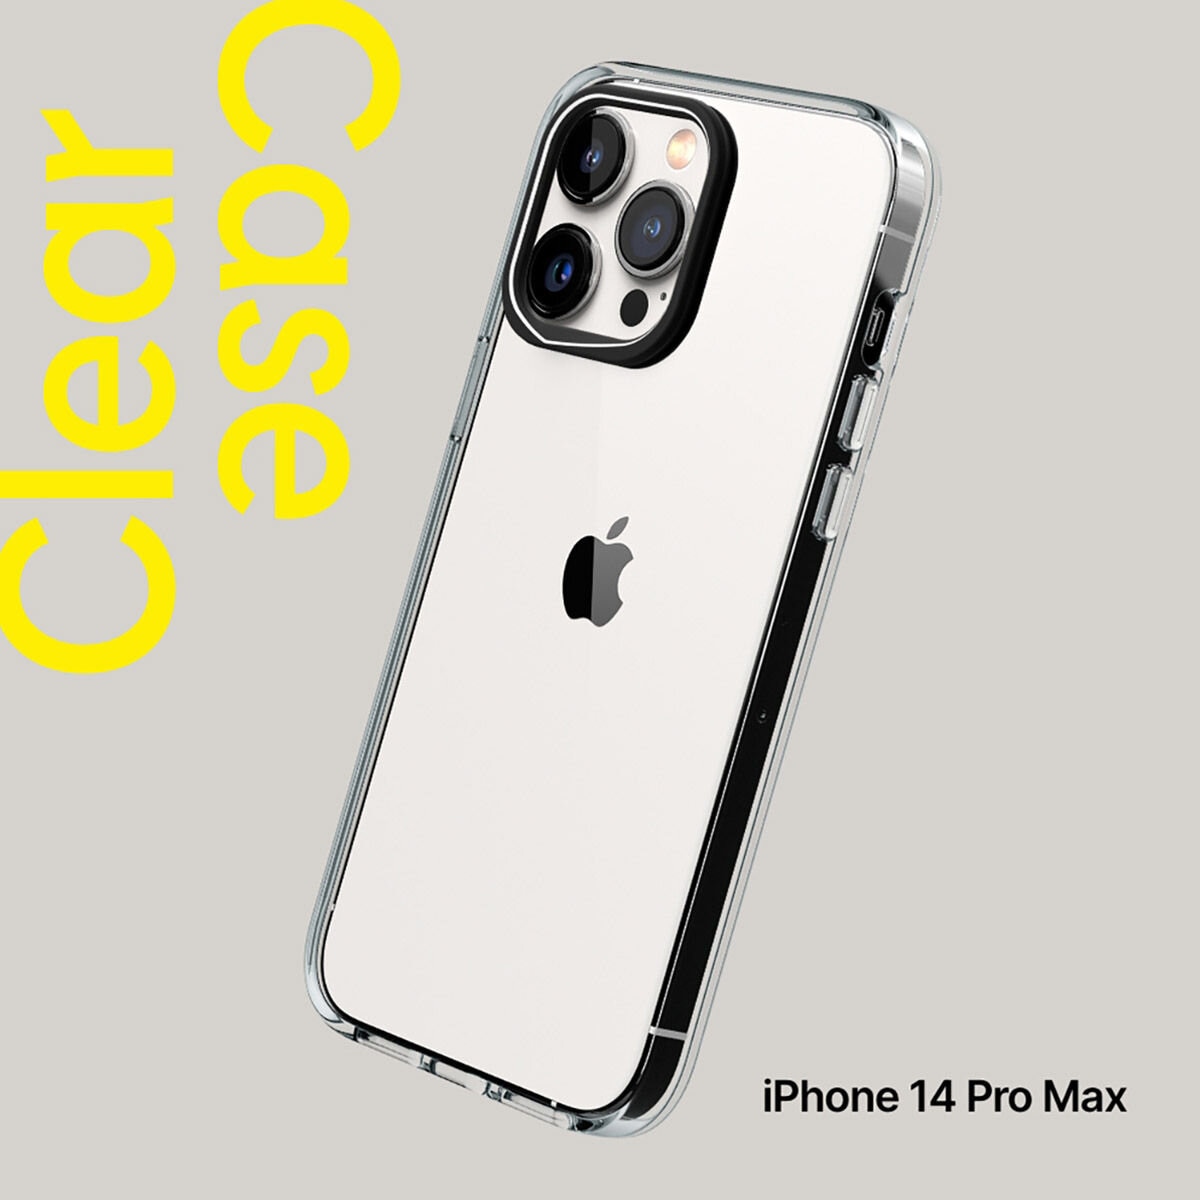 犀牛盾 iPhone 14 Pro Max Clear 透明防摔手機殼 + 9H 3D滿版螢幕玻璃保護貼 + 手機掛繩 曙光灰